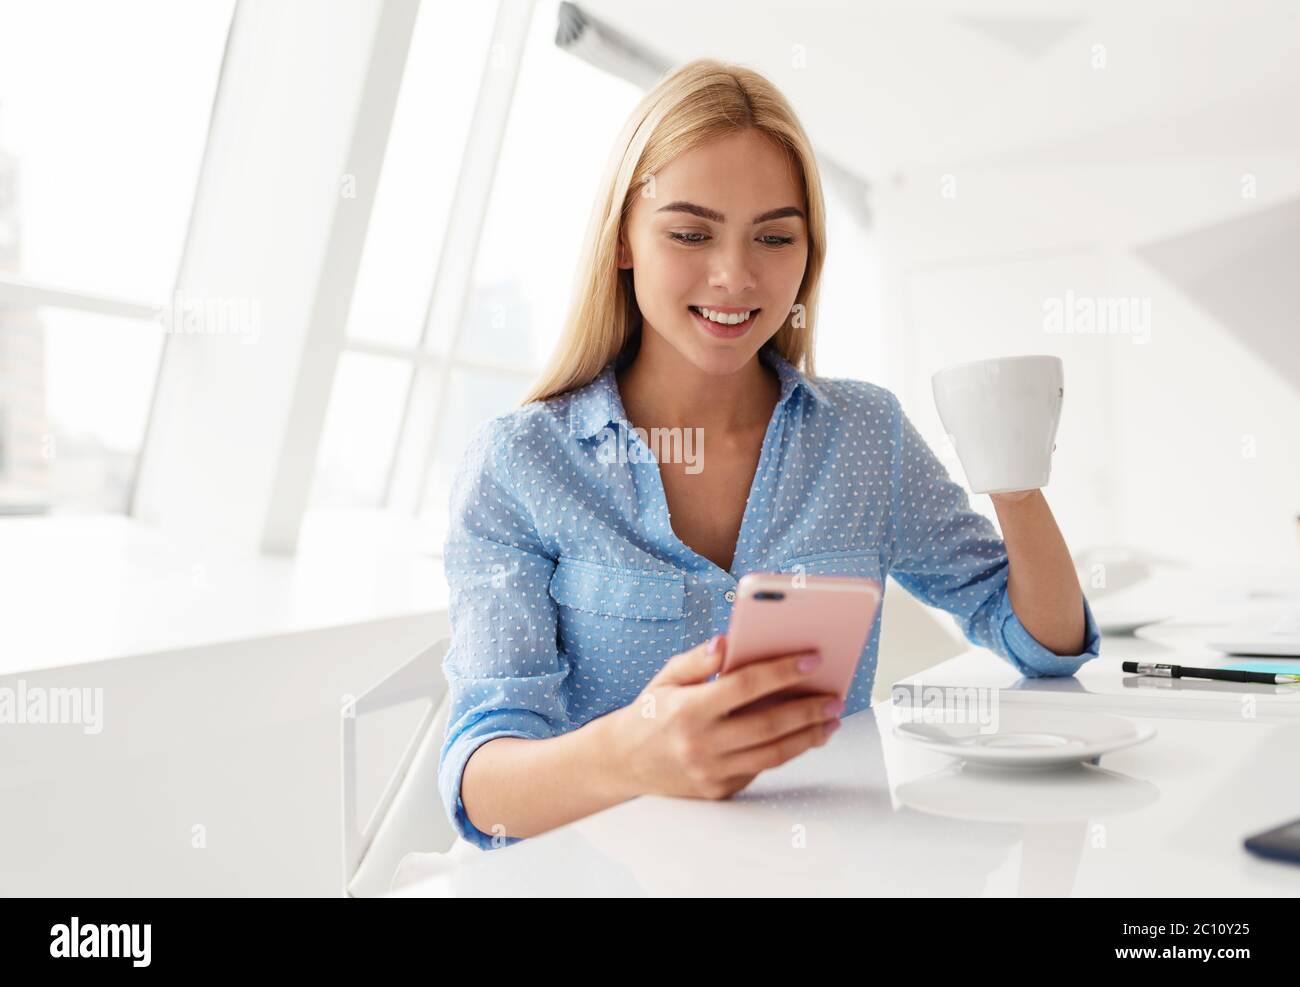 Lächelnde junge Frau mit Handy in der Hand, während sie Kaffee in einem weißen Raum trinkt Stockfoto